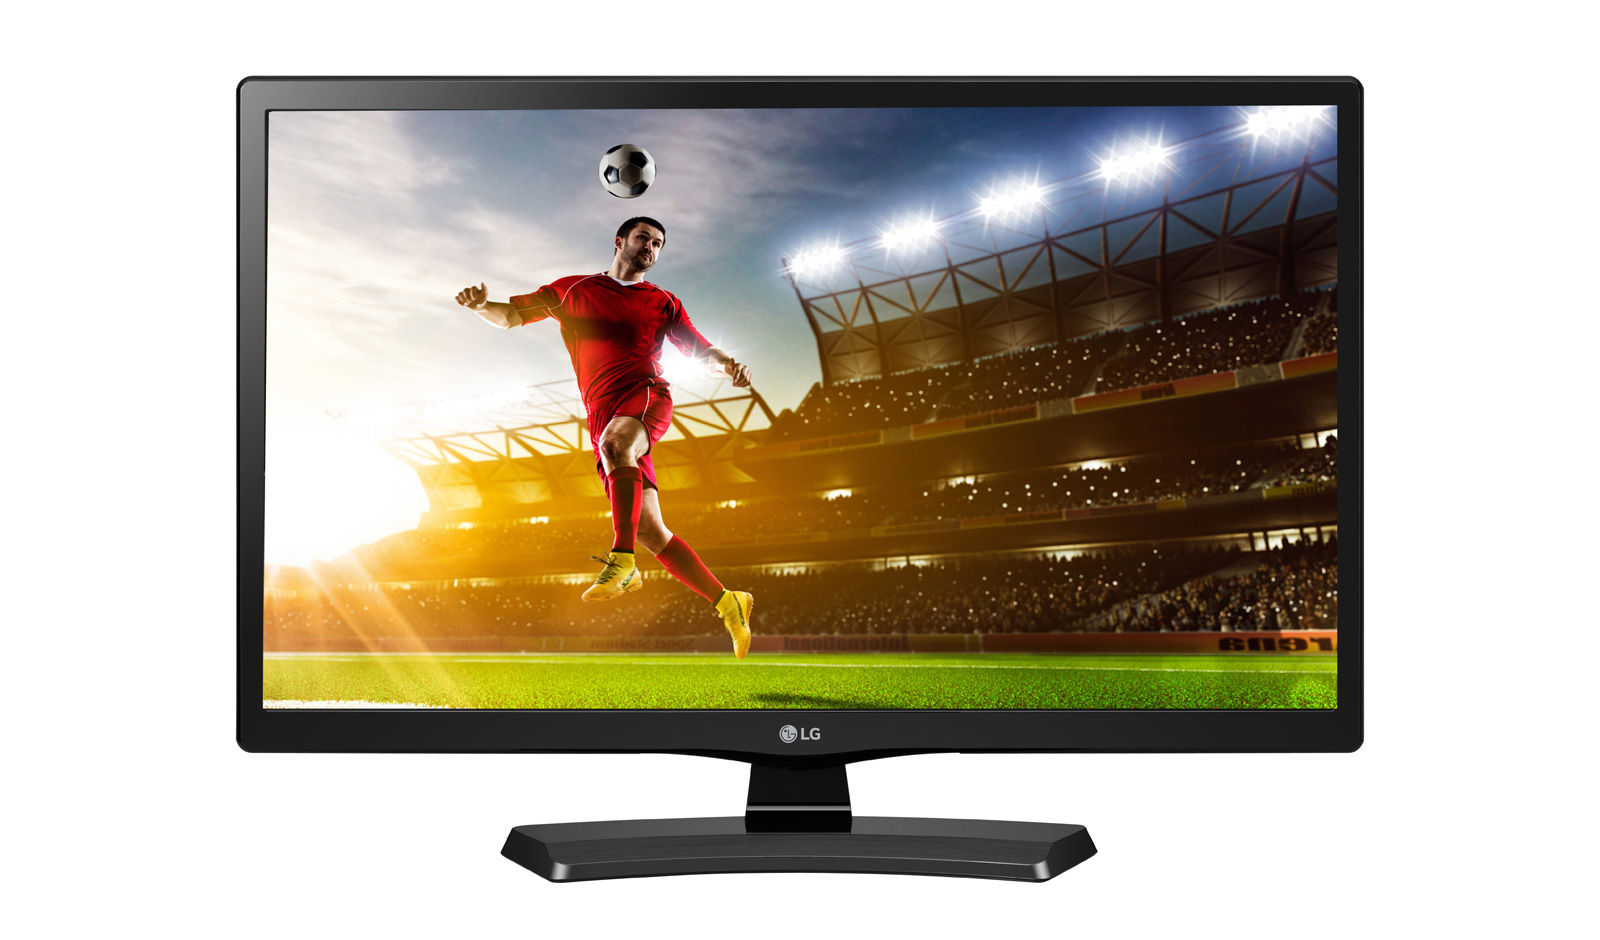 LG 20MT48AF-PT LED TV with Monitor - Hitam